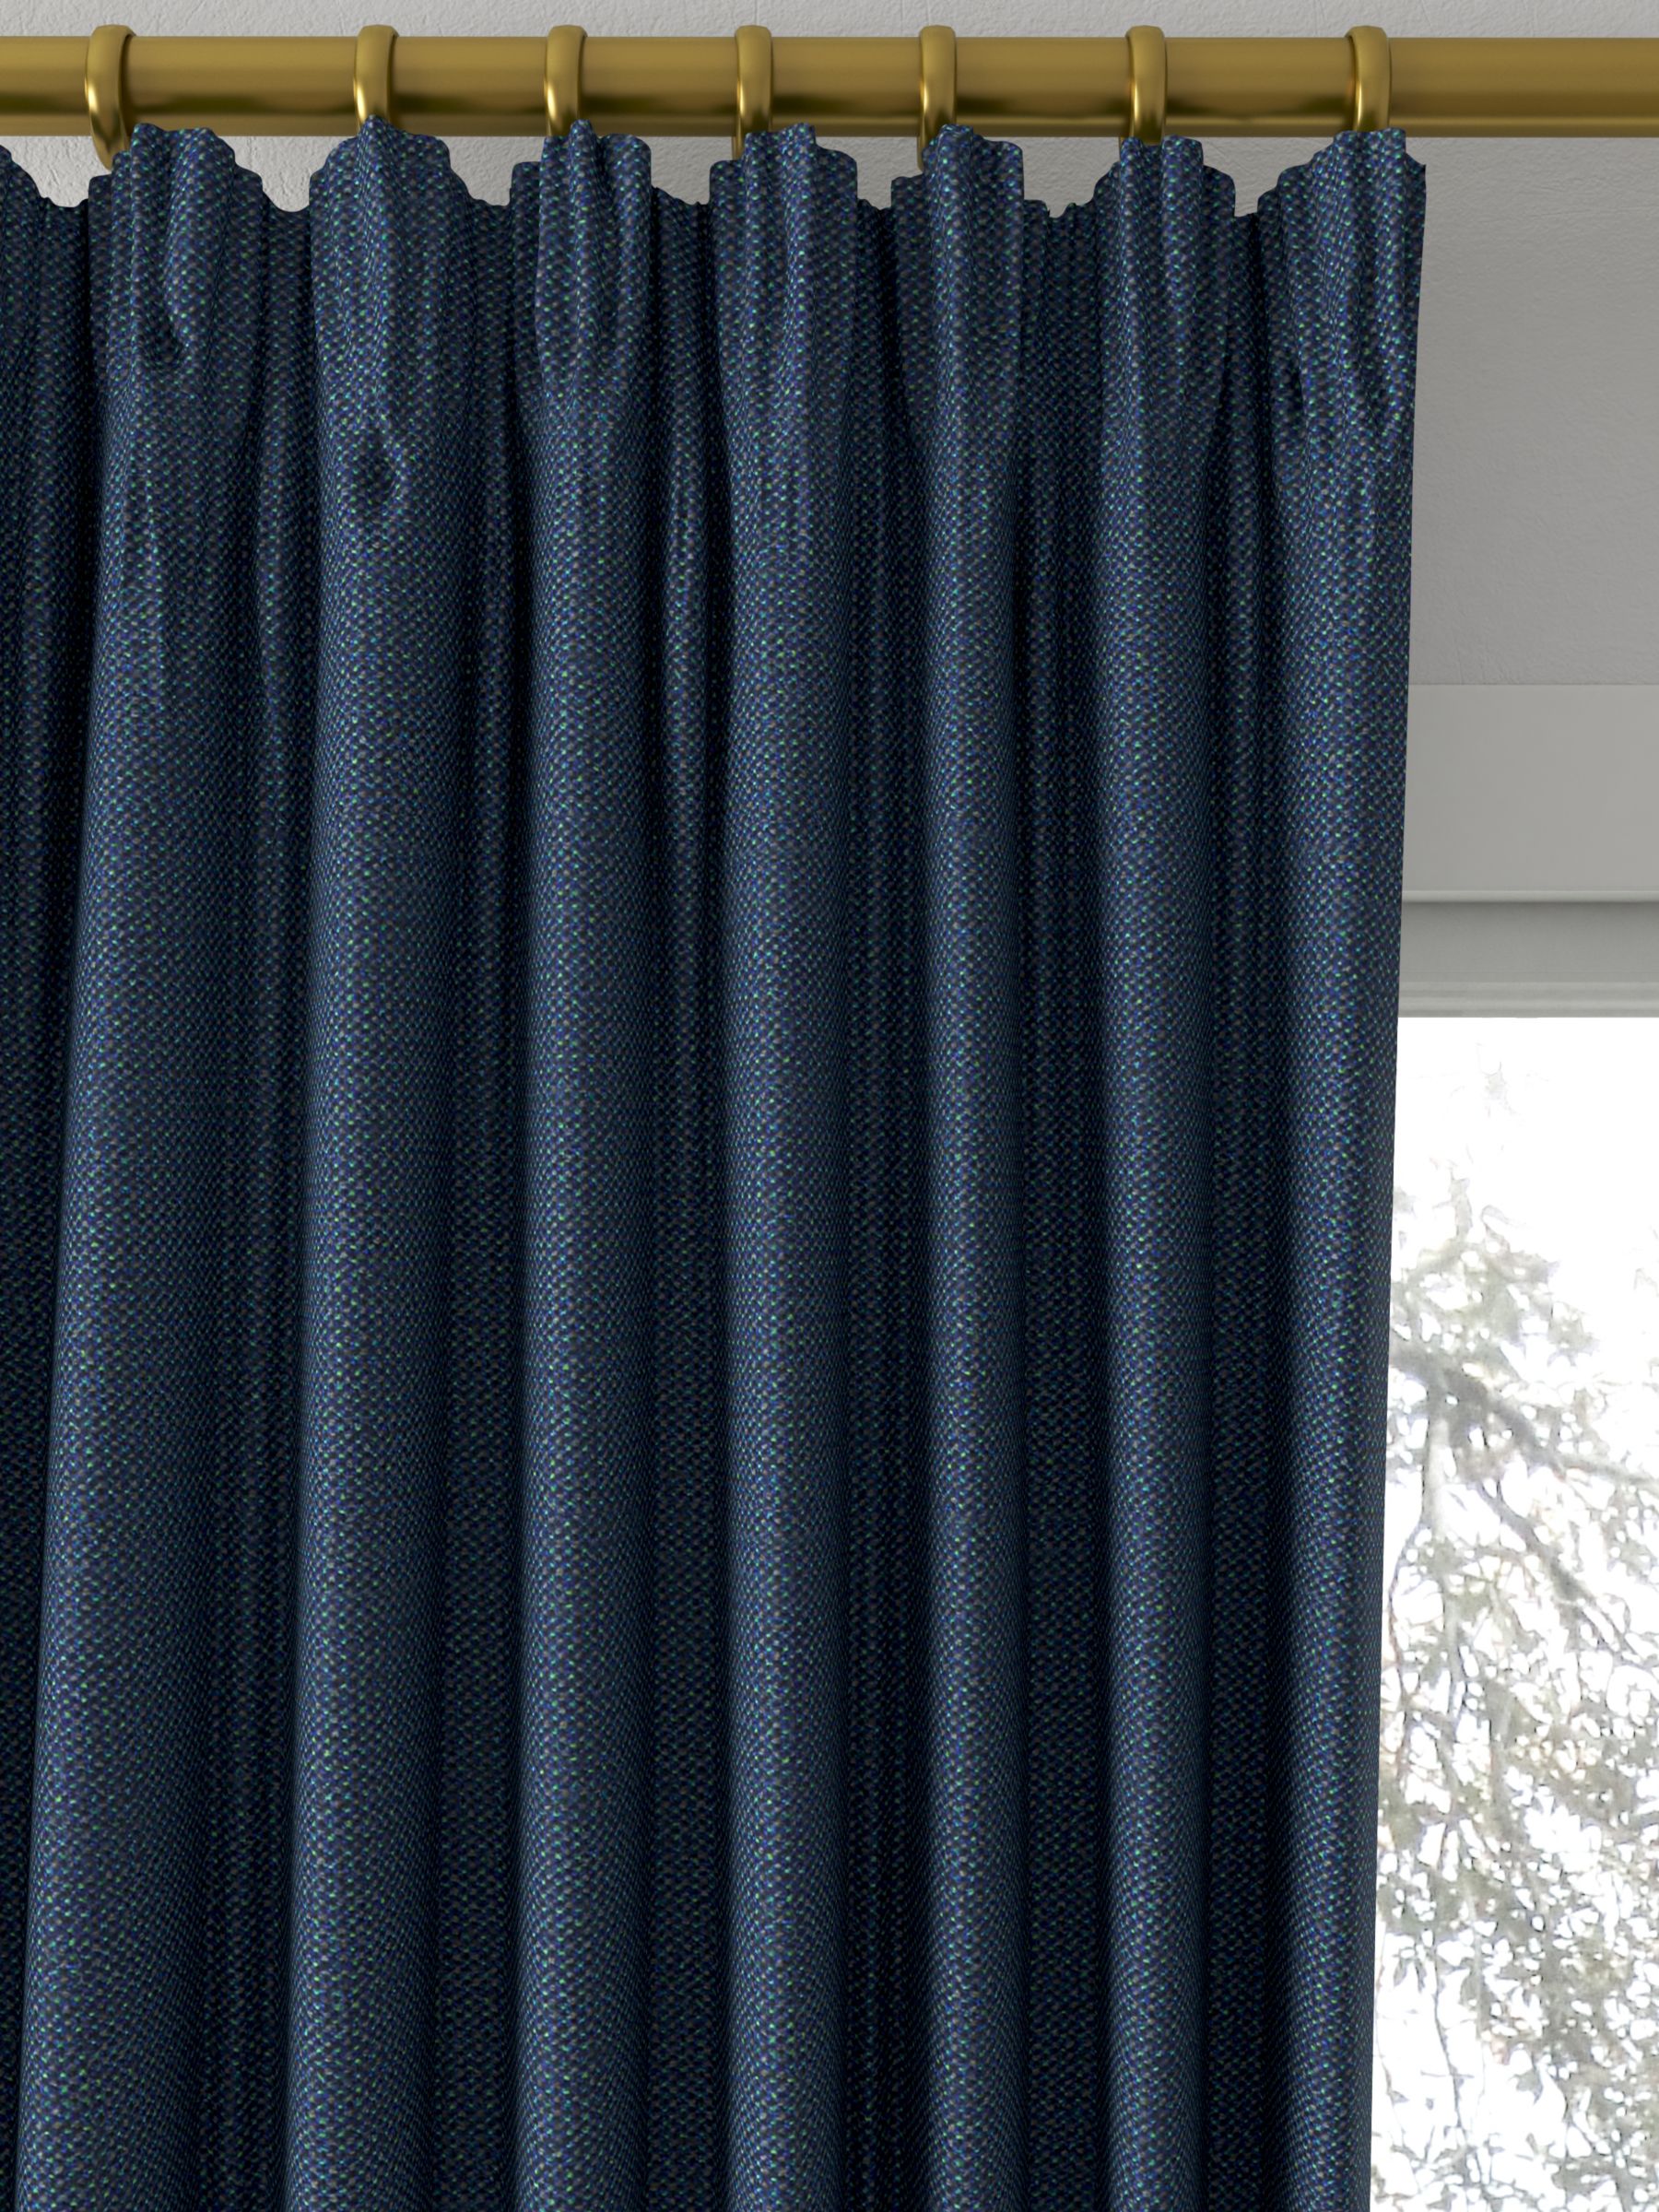 Designers Guild Porto Made to Measure Curtains, Indigo